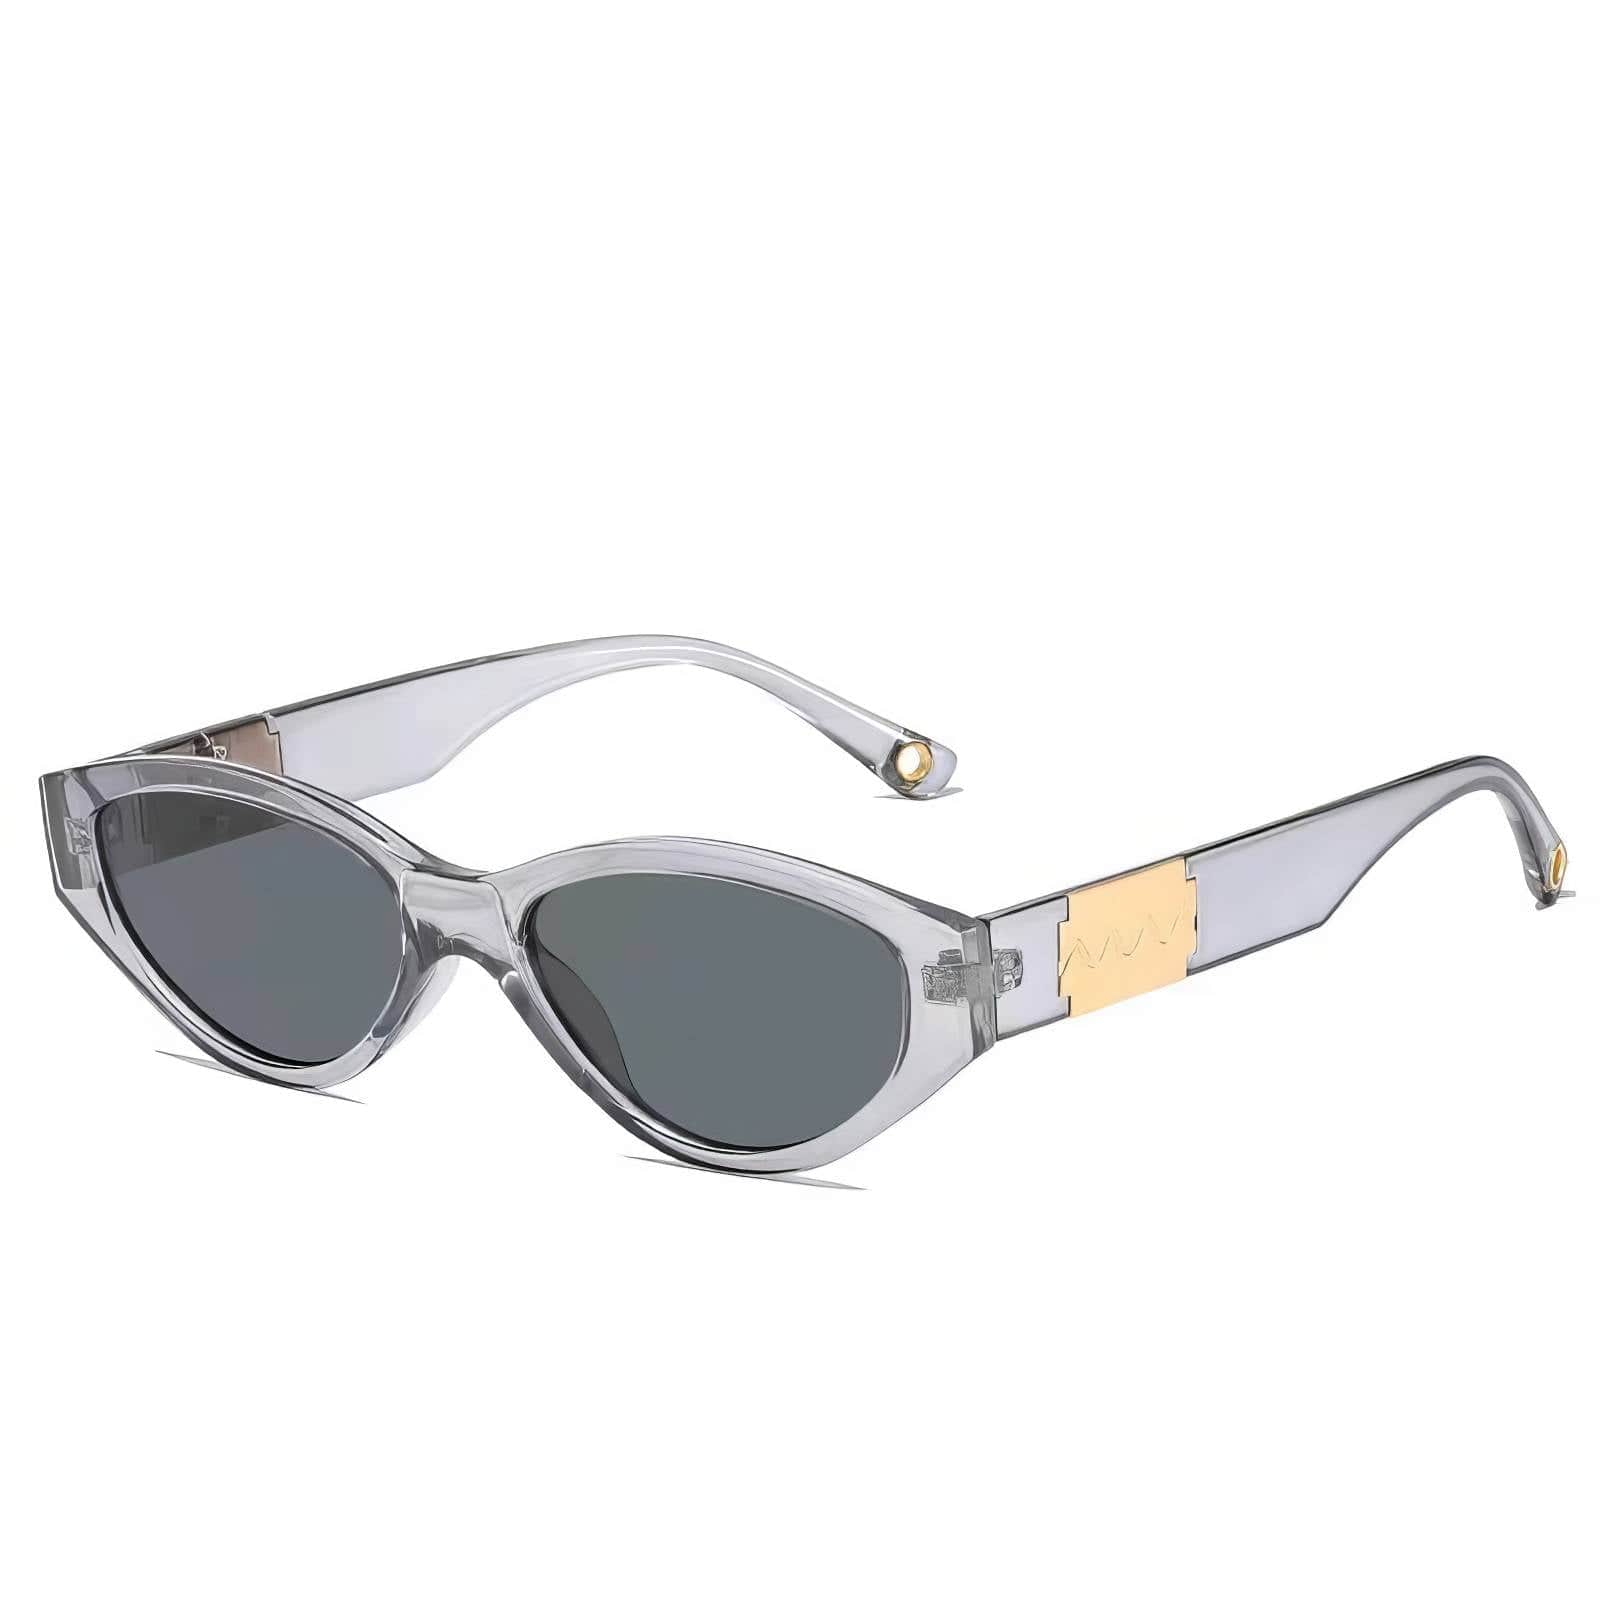 Fashion Trending Cat Eye Sunglasses Light Gray / Resin